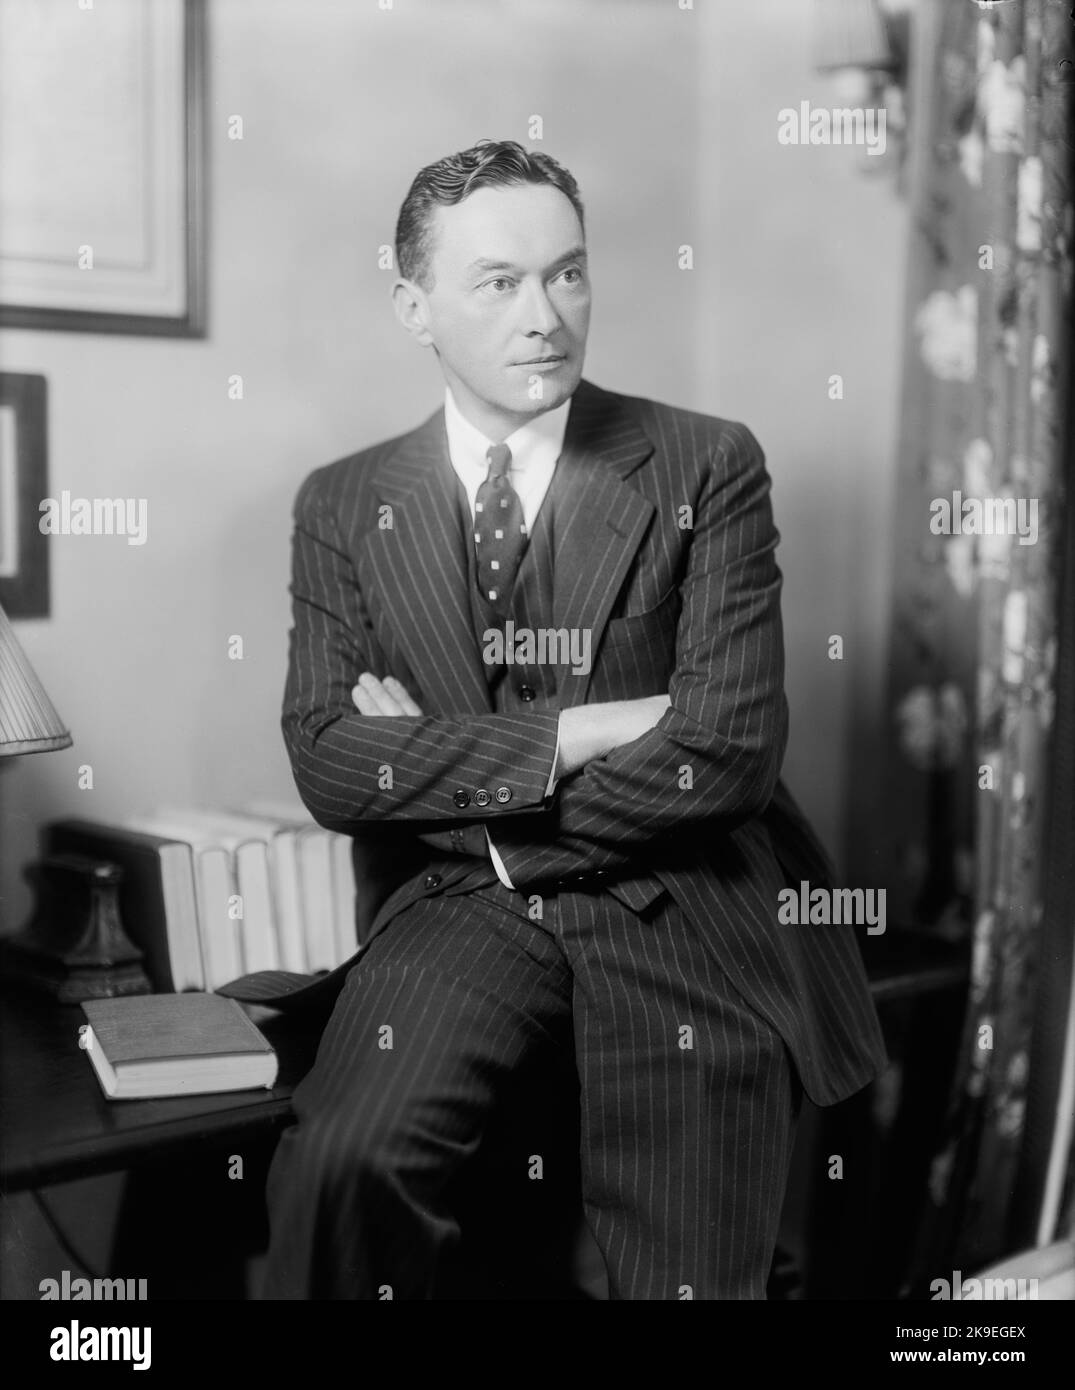 Porträt von Walter Lippmann (1889-1974), amerikanischer Schriftsteller, Reporter, politischer Kommentator. Datum 1920. Stockfoto